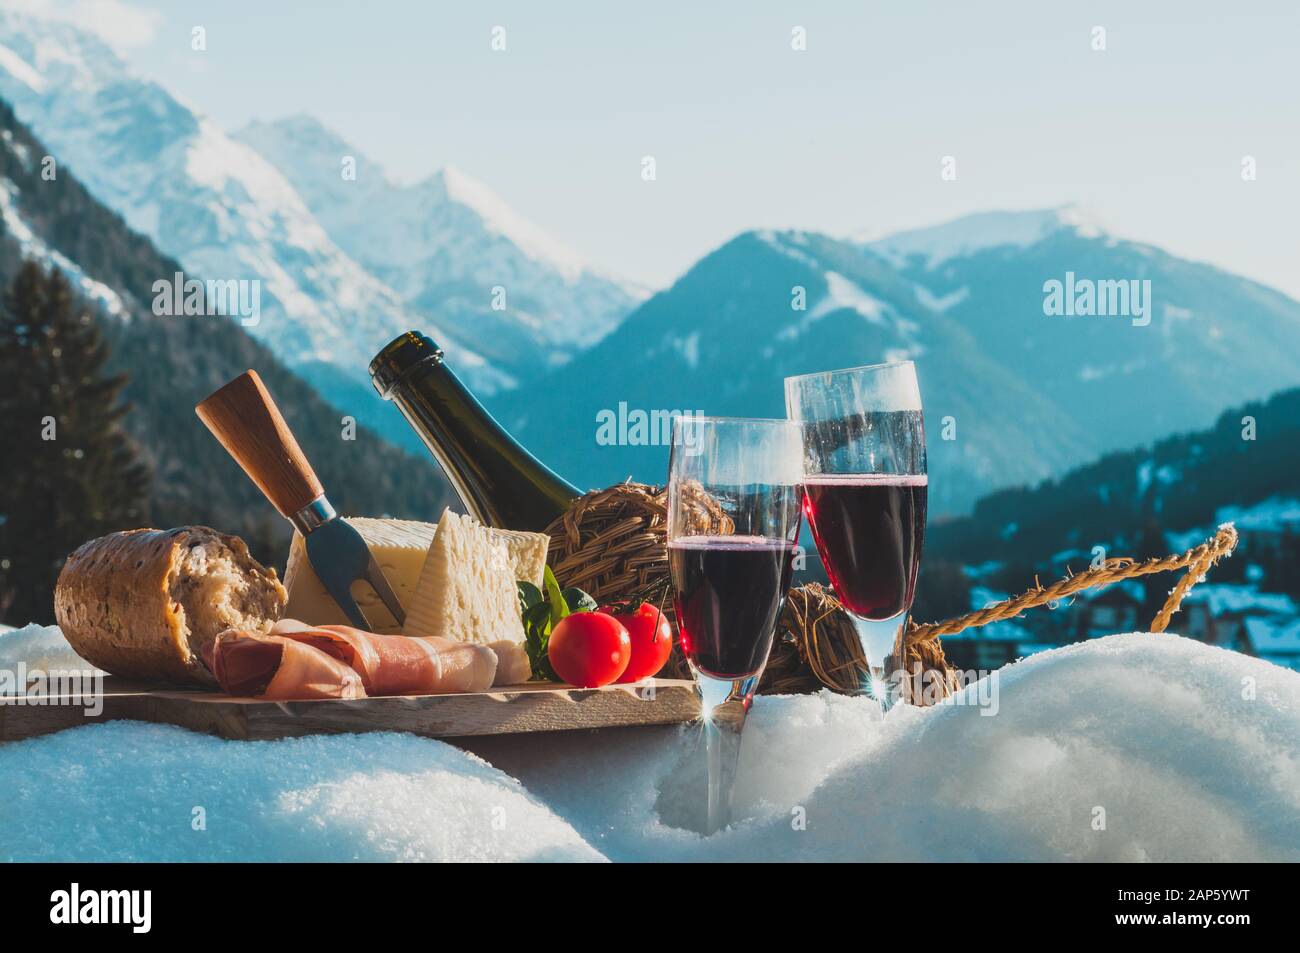 Cucina tradizionale italiana e bevande all'aperto nella soleggiata giornata invernale presso la stazione sciistica. Romantico pic-nic alpino nelle Dolomiti con sfondo montano Foto Stock